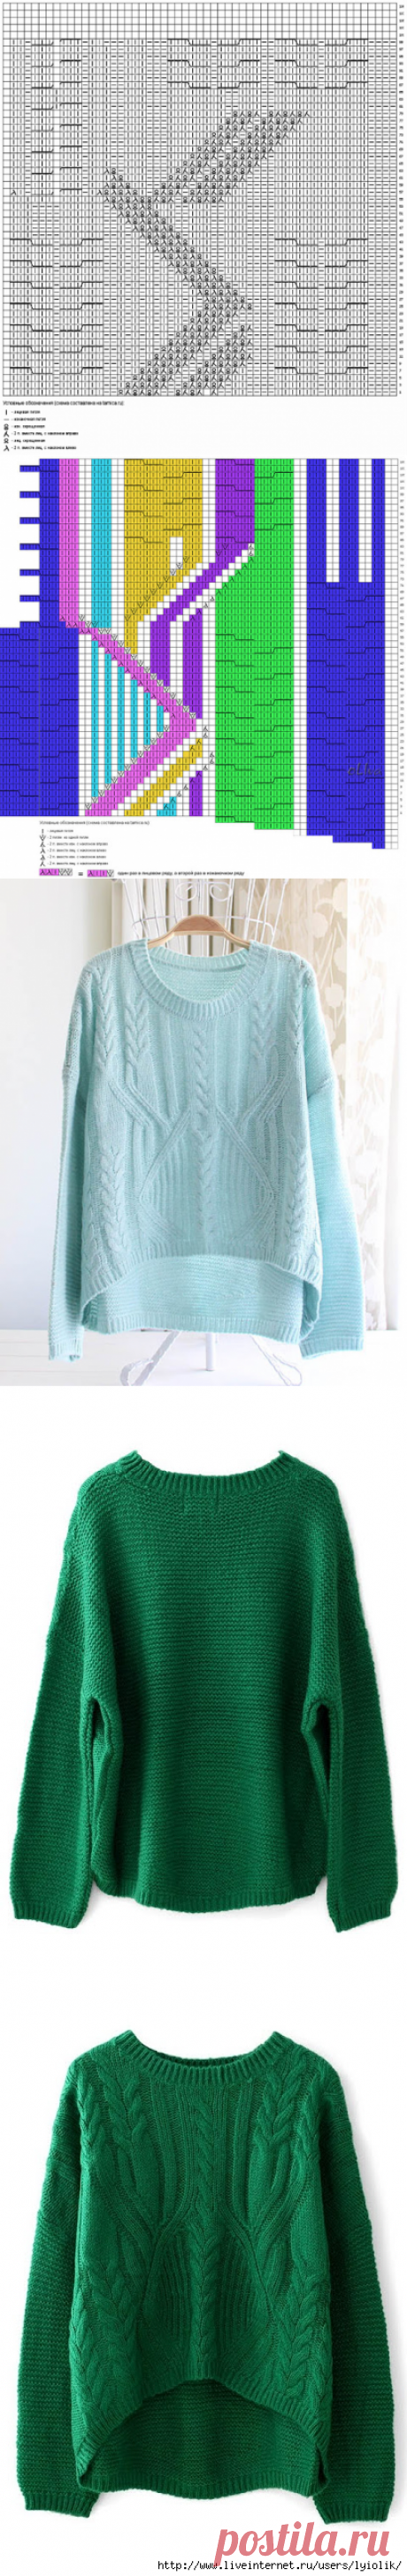 Арановый свитер